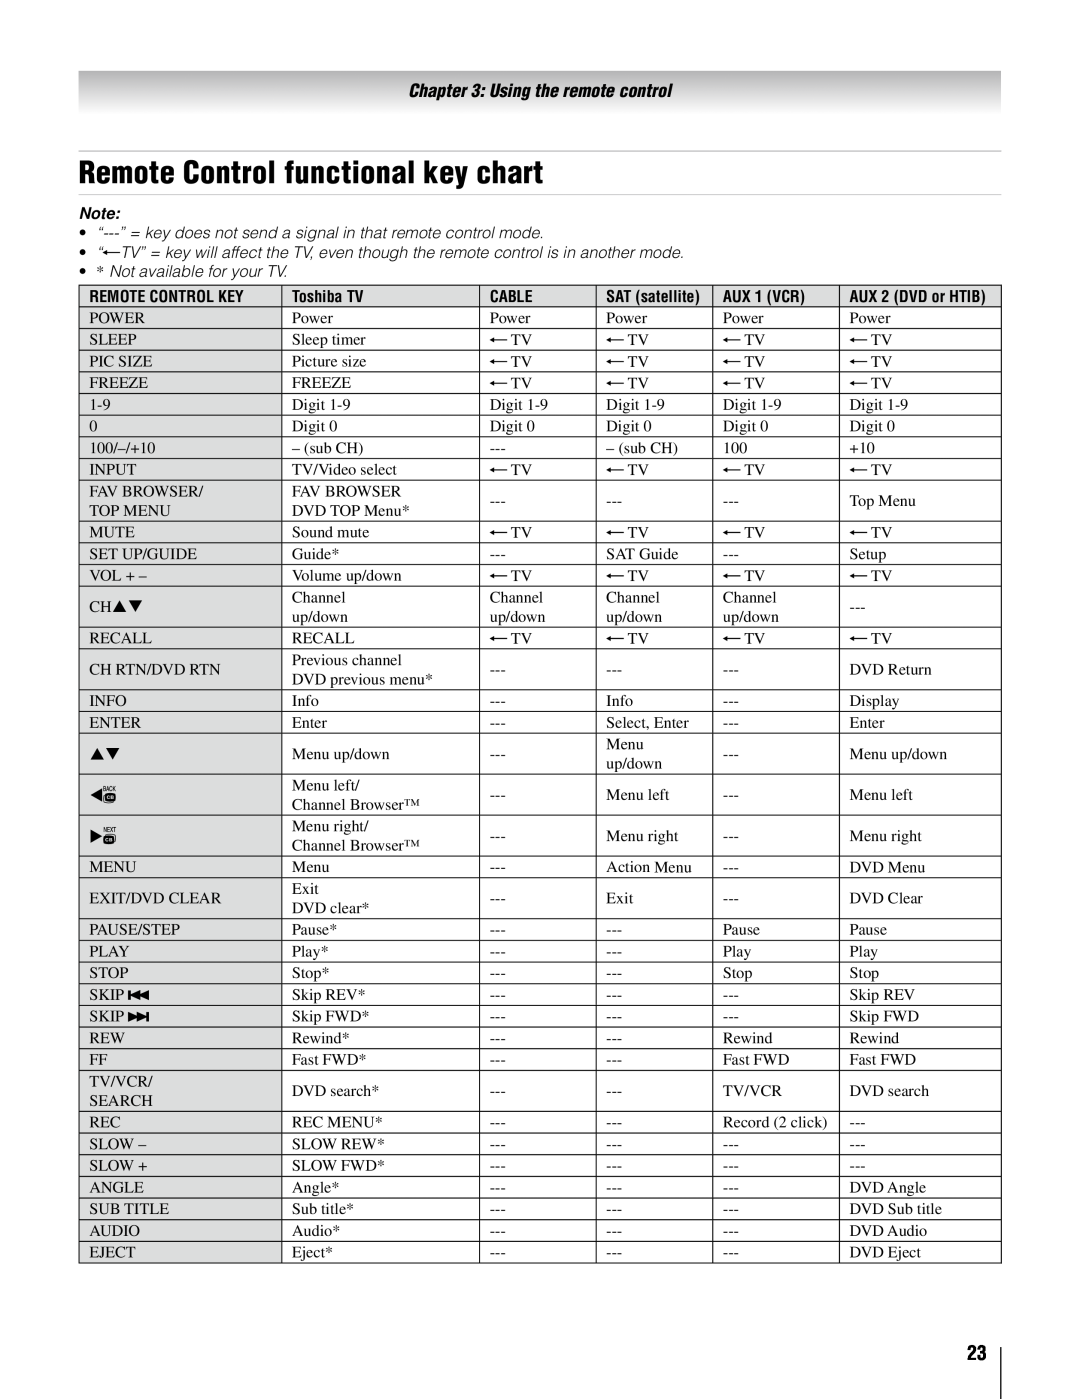 Toshiba 26AV502U Remote Control functional key chart, Using the remote control, Remote Control Key, Toshiba TV, Cable 